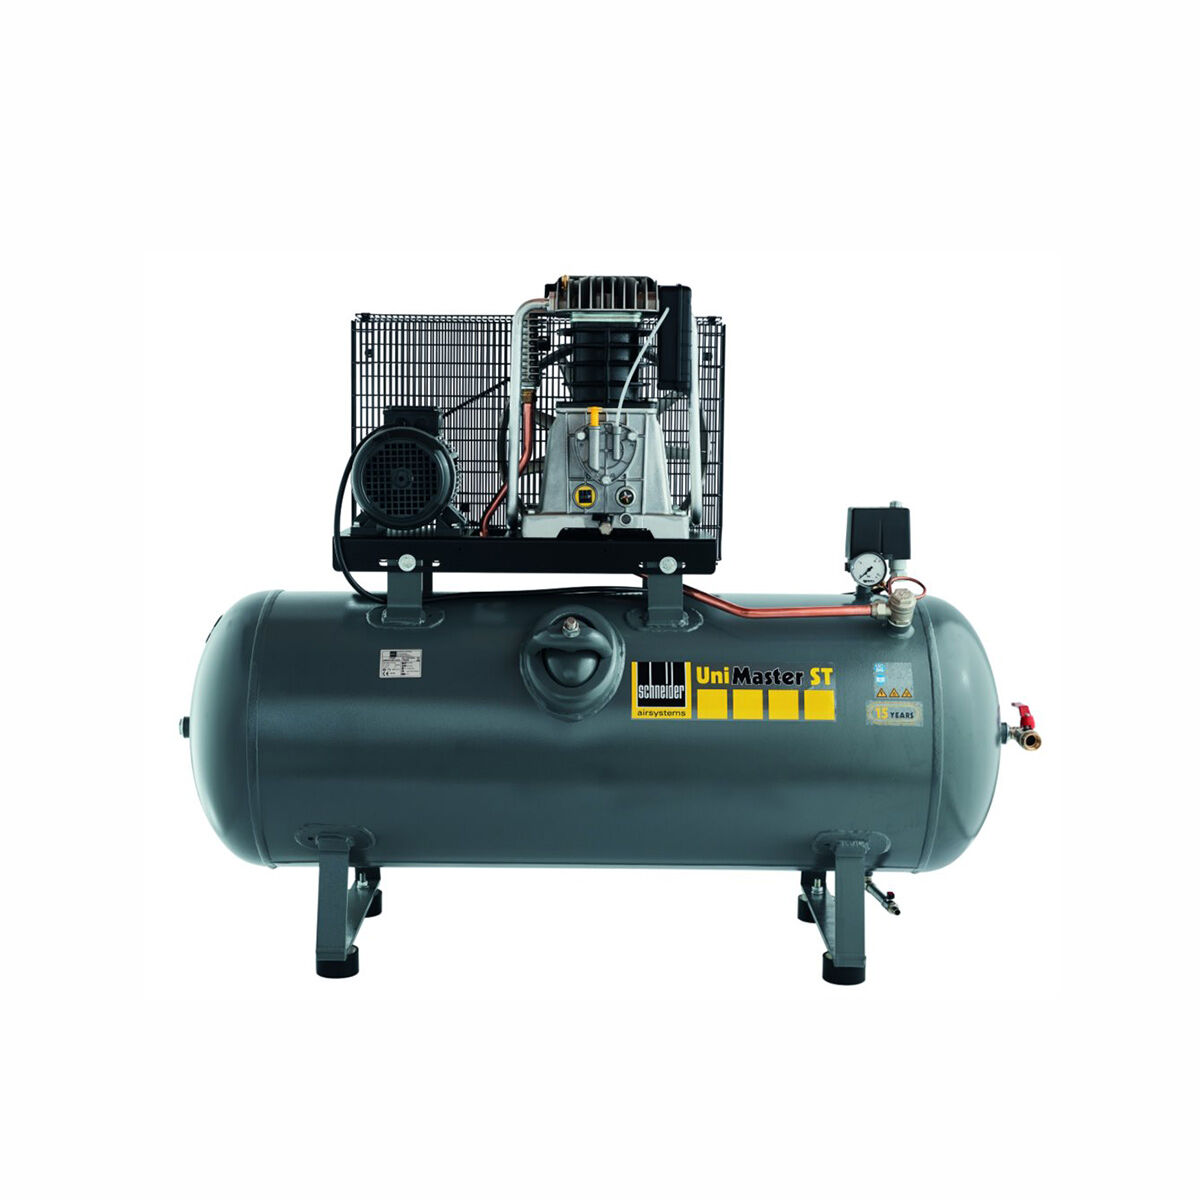 Schneider-Kompressor UNM STL 1000-10-500 C 1121580513